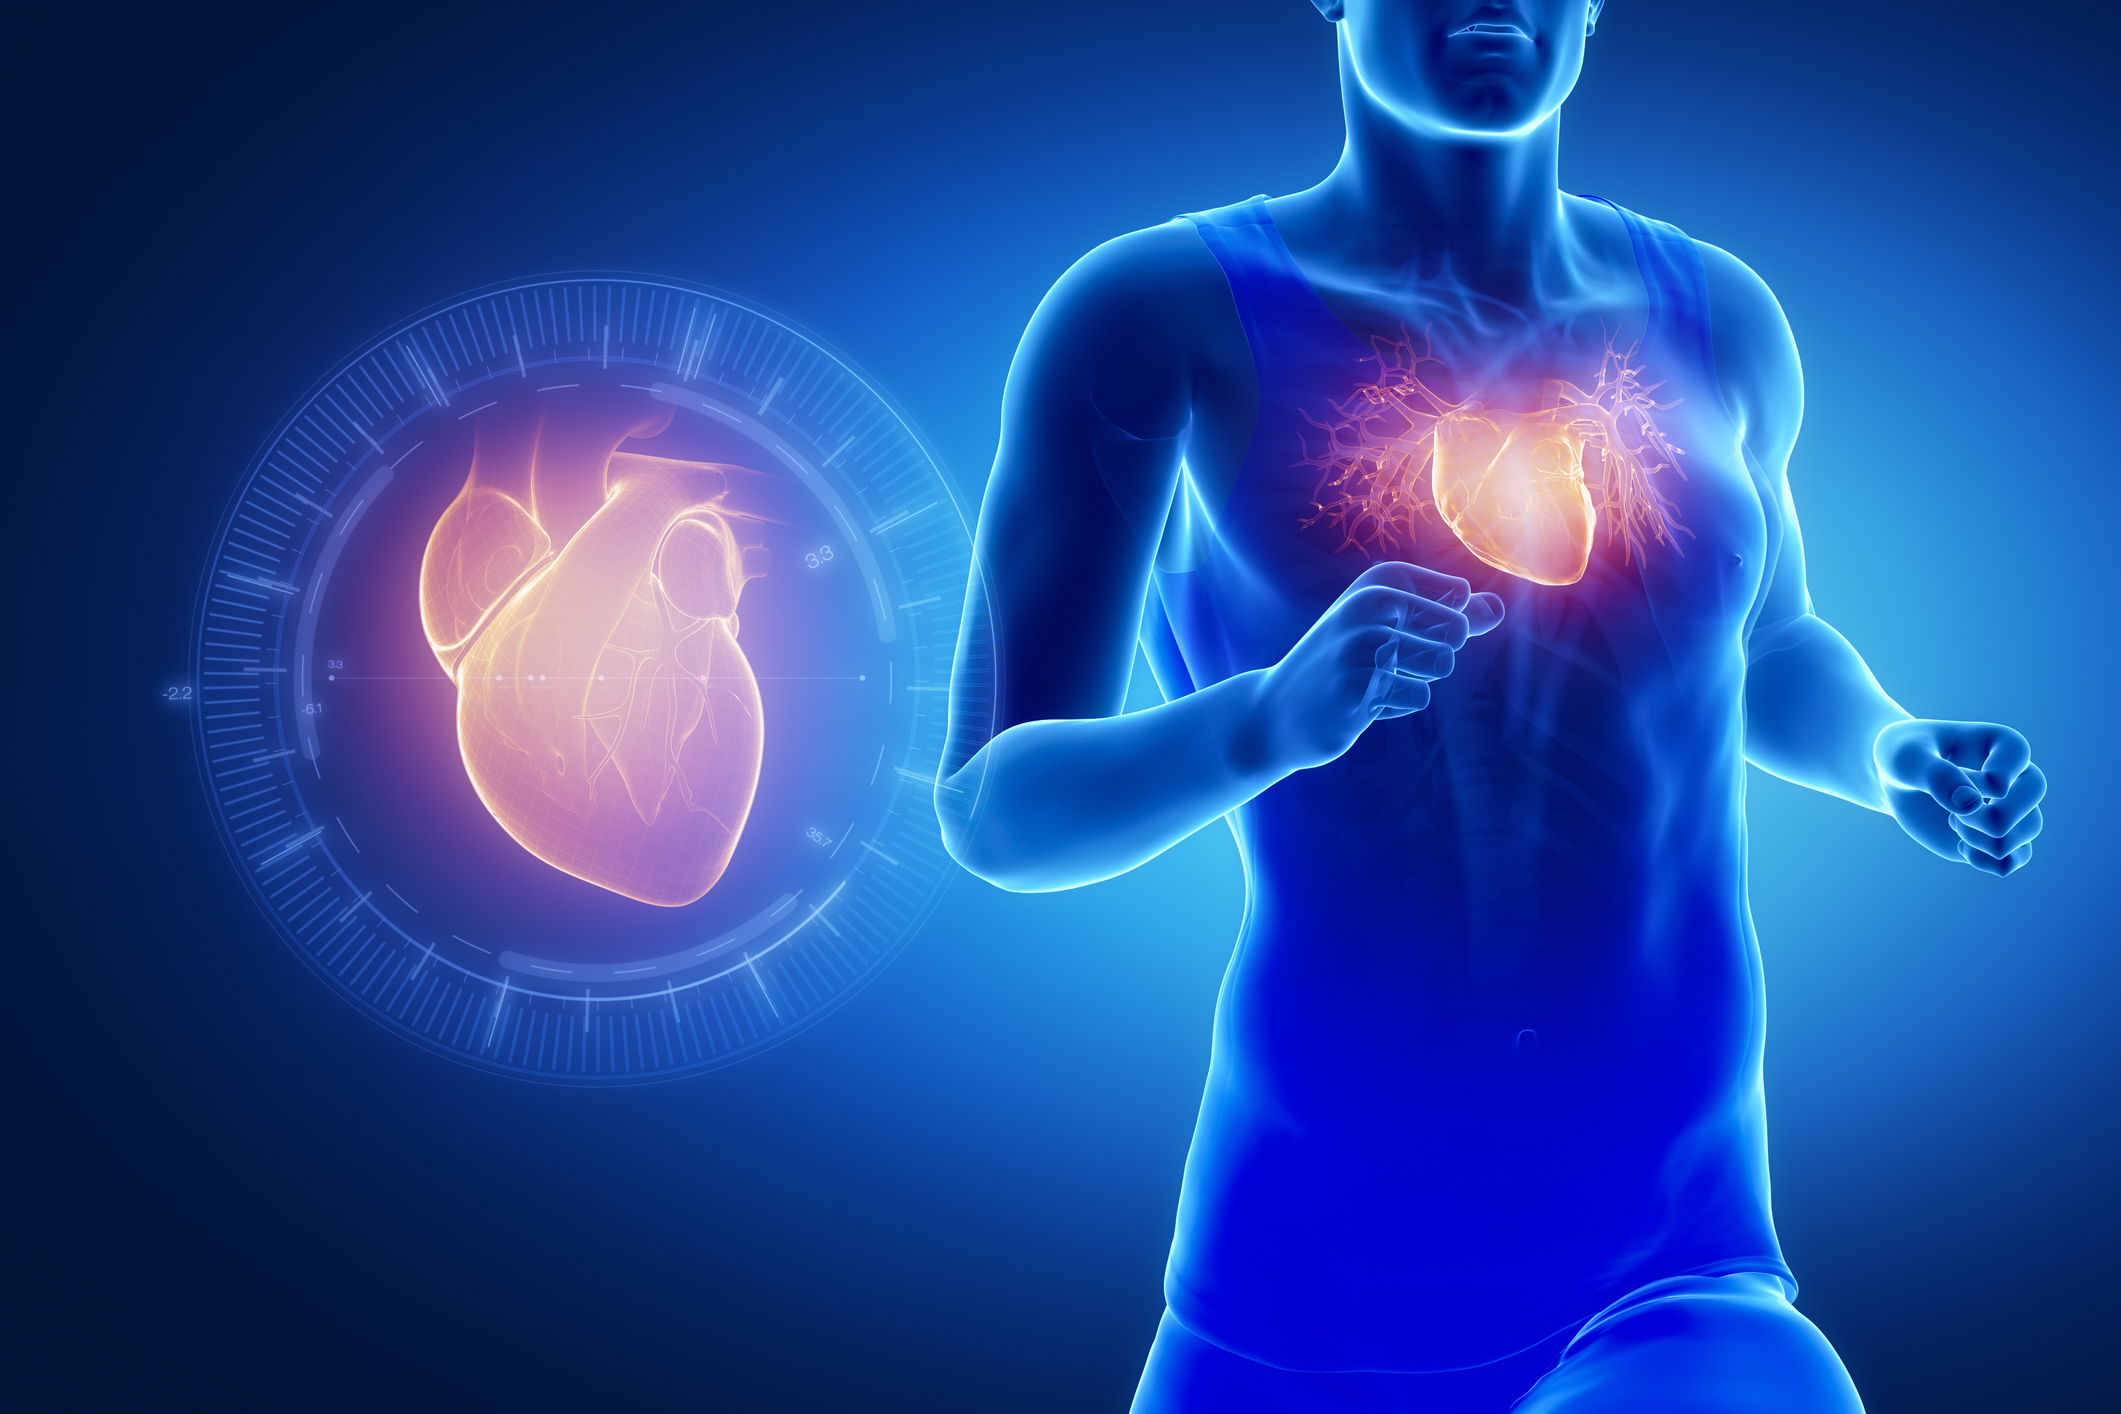 Тренированность сердца. Сердце спортсмена. Влияние спорта на сердечно-сосудистую систему. Сердце человека и спортсмена.